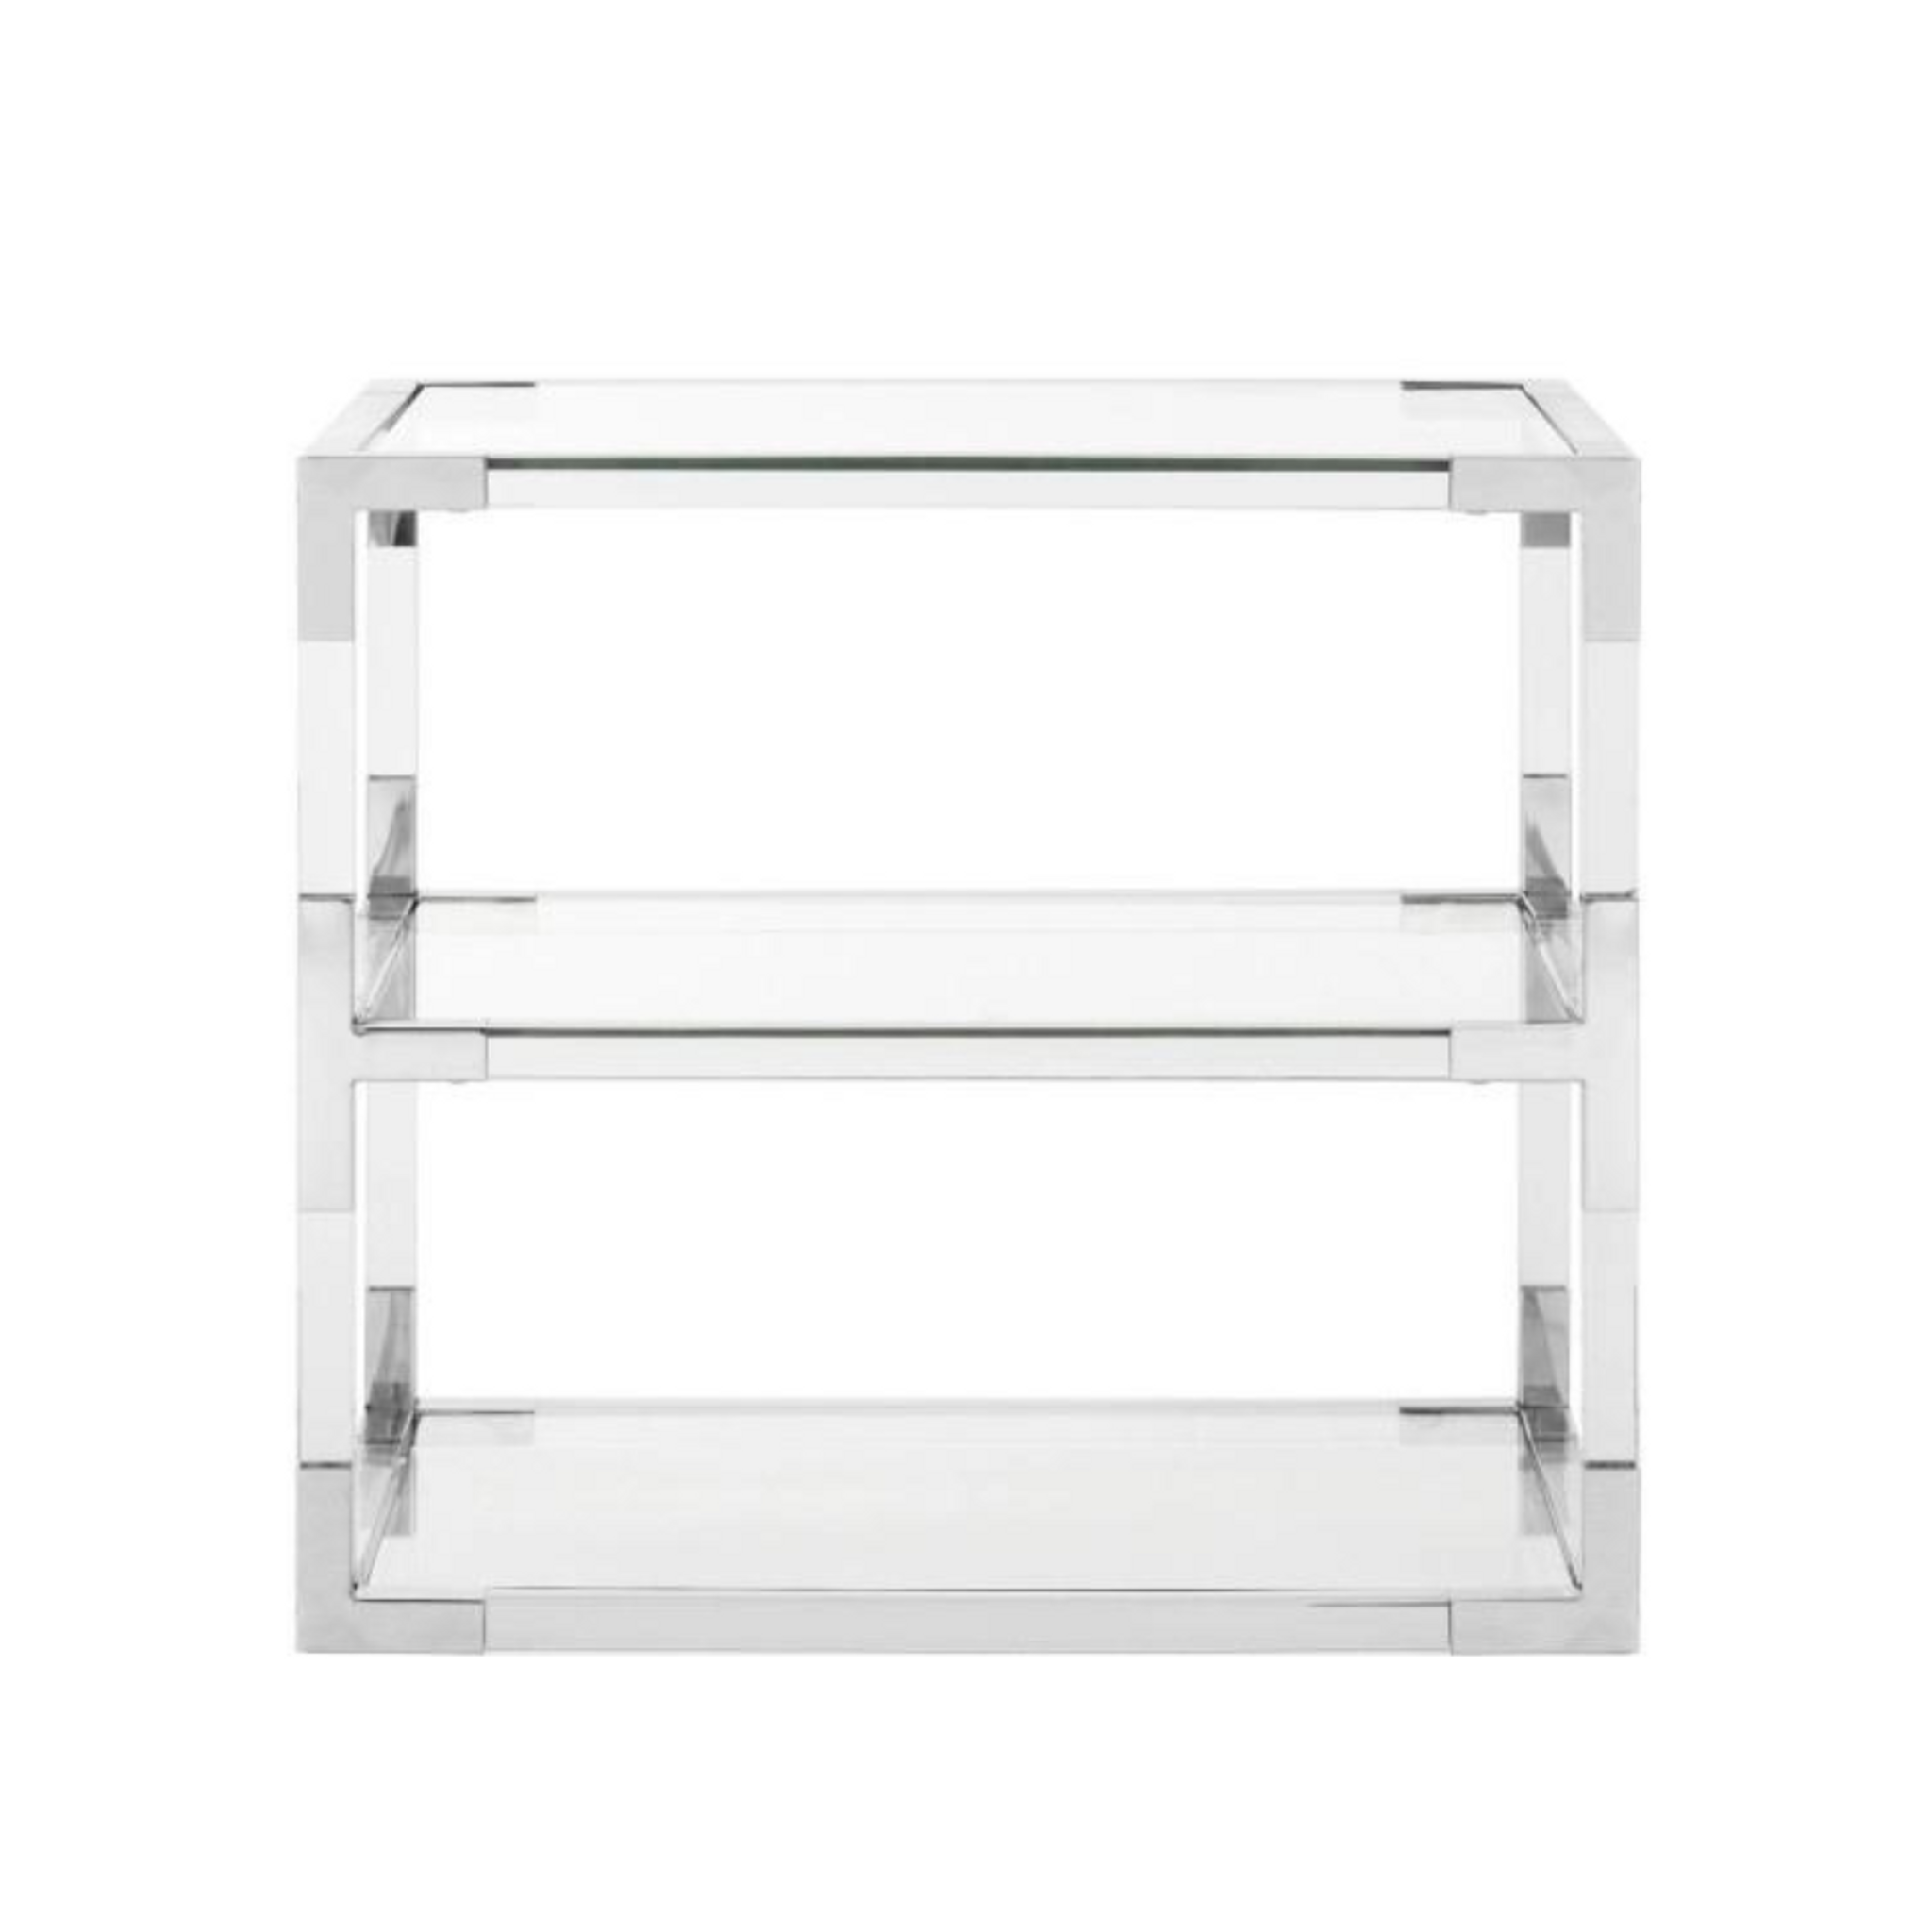 2 Shelf Side Table with Chrome Corners 